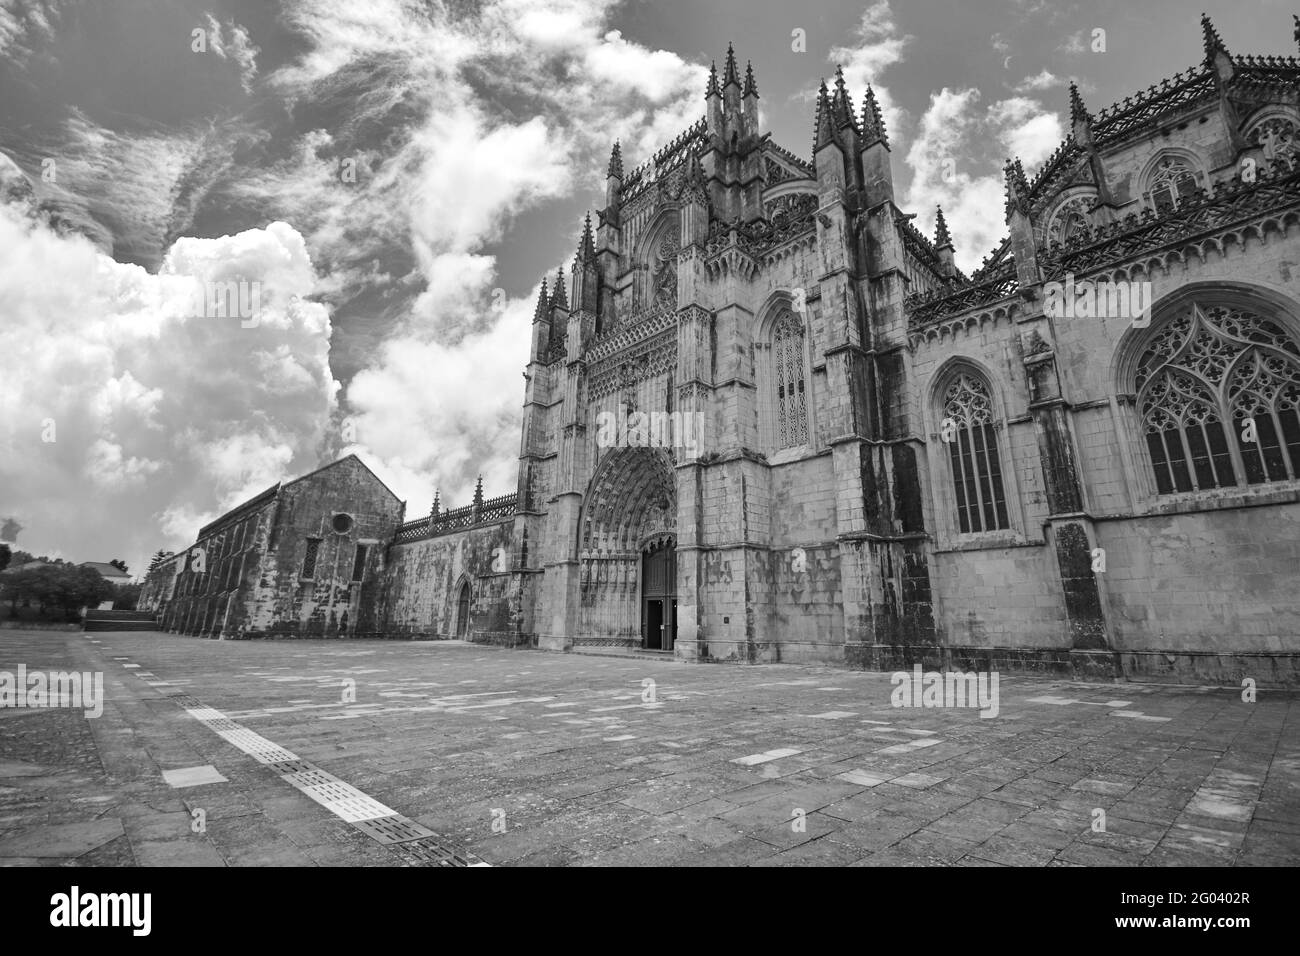 Monasterio De Batalha, Portugal. Monumento gótico medieval en Portugal. Lugar Declarado Patrimonio De La Humanidad Por La Unesco. Foto de stock